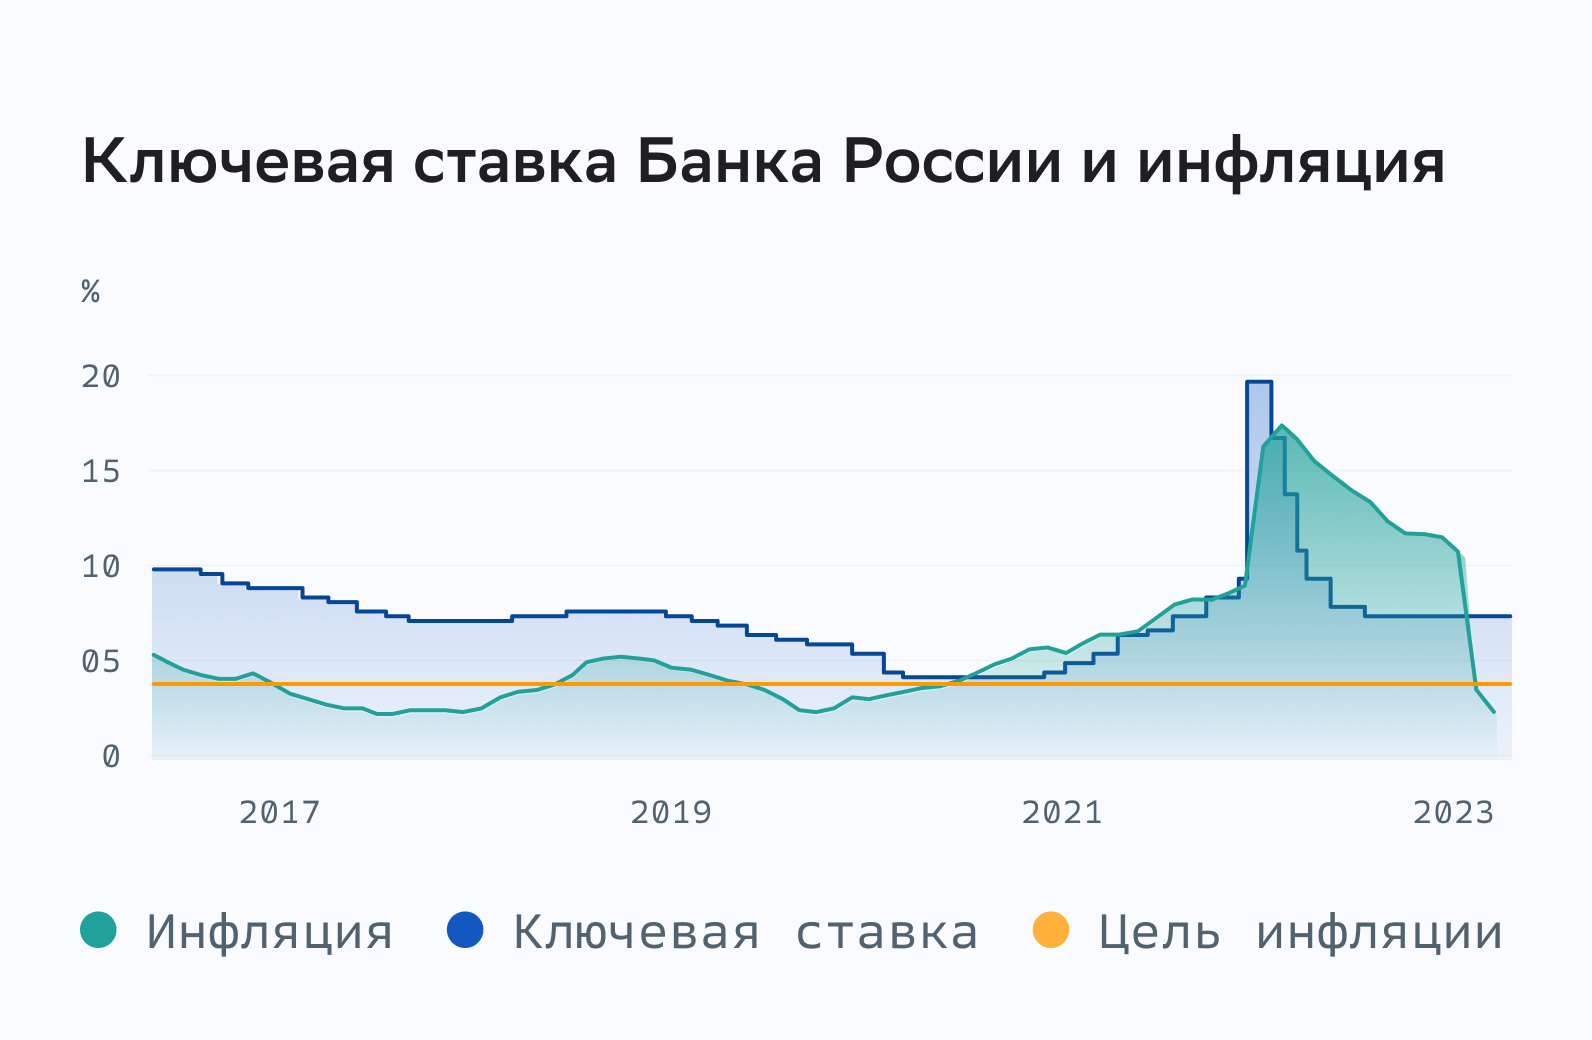 Ключевая ставка Банка России и инфляция.jpg